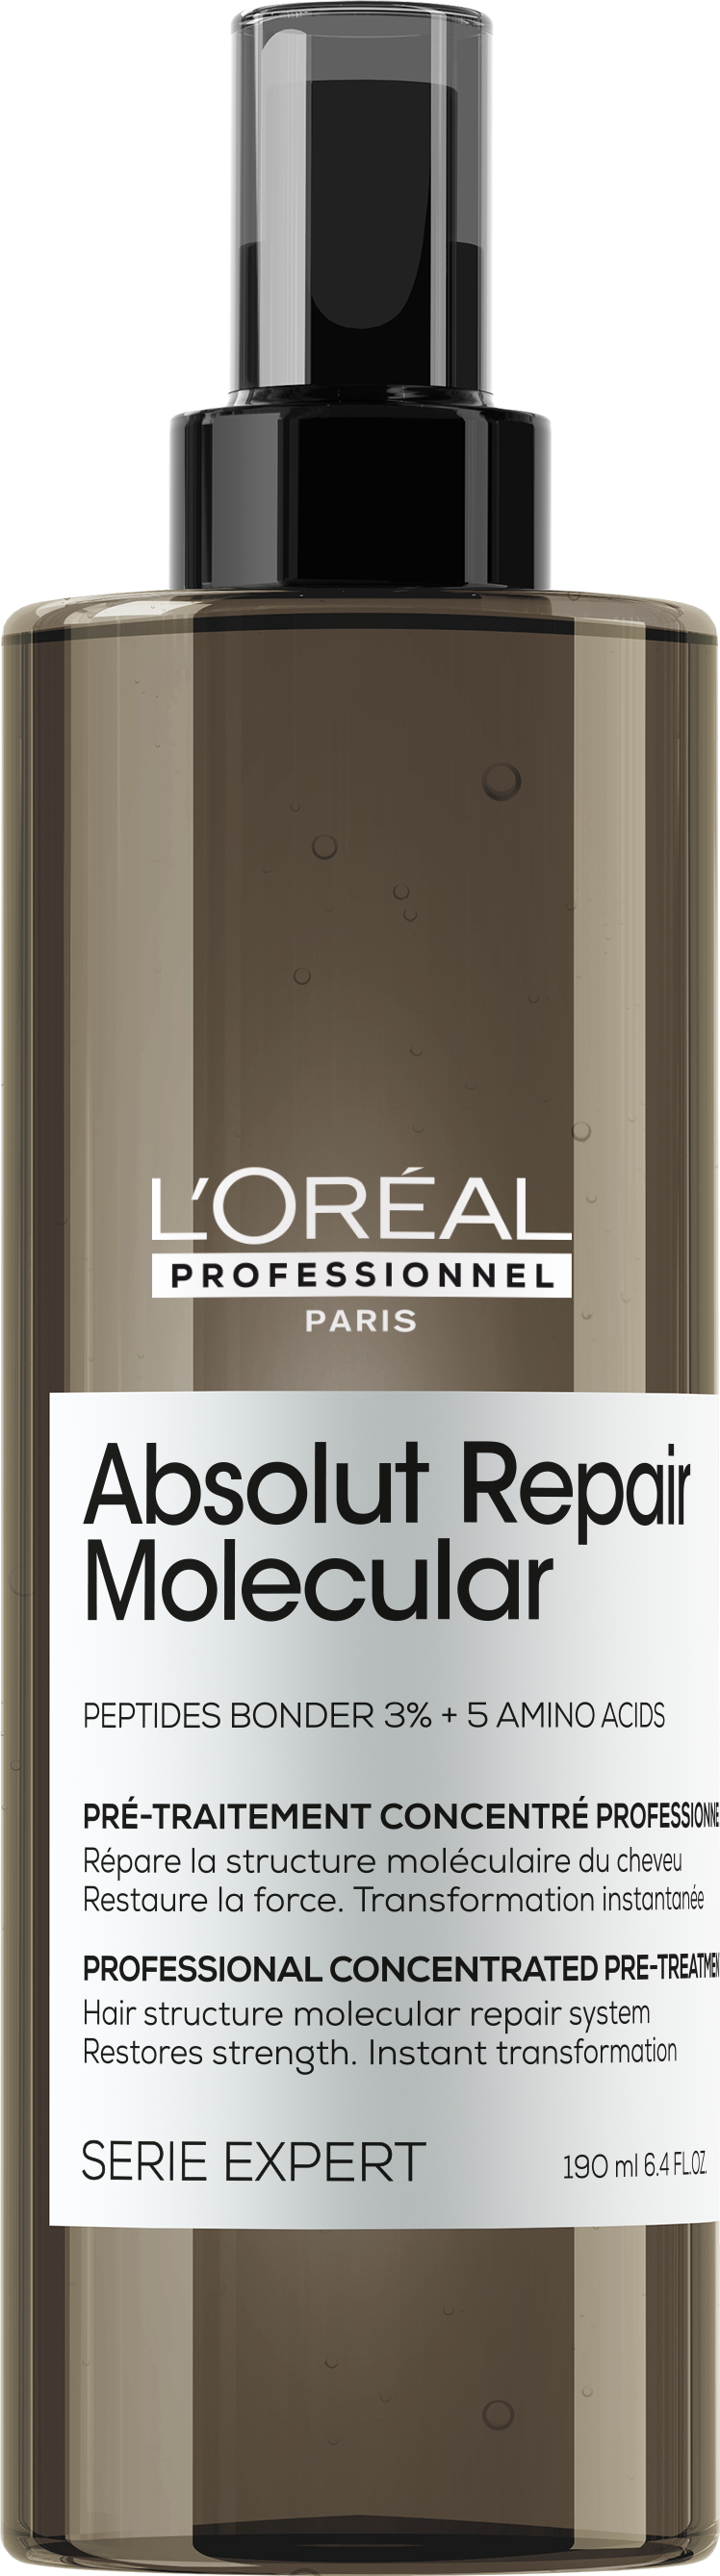 Absolut Repair Molecular Pre-treatment 42,00 €